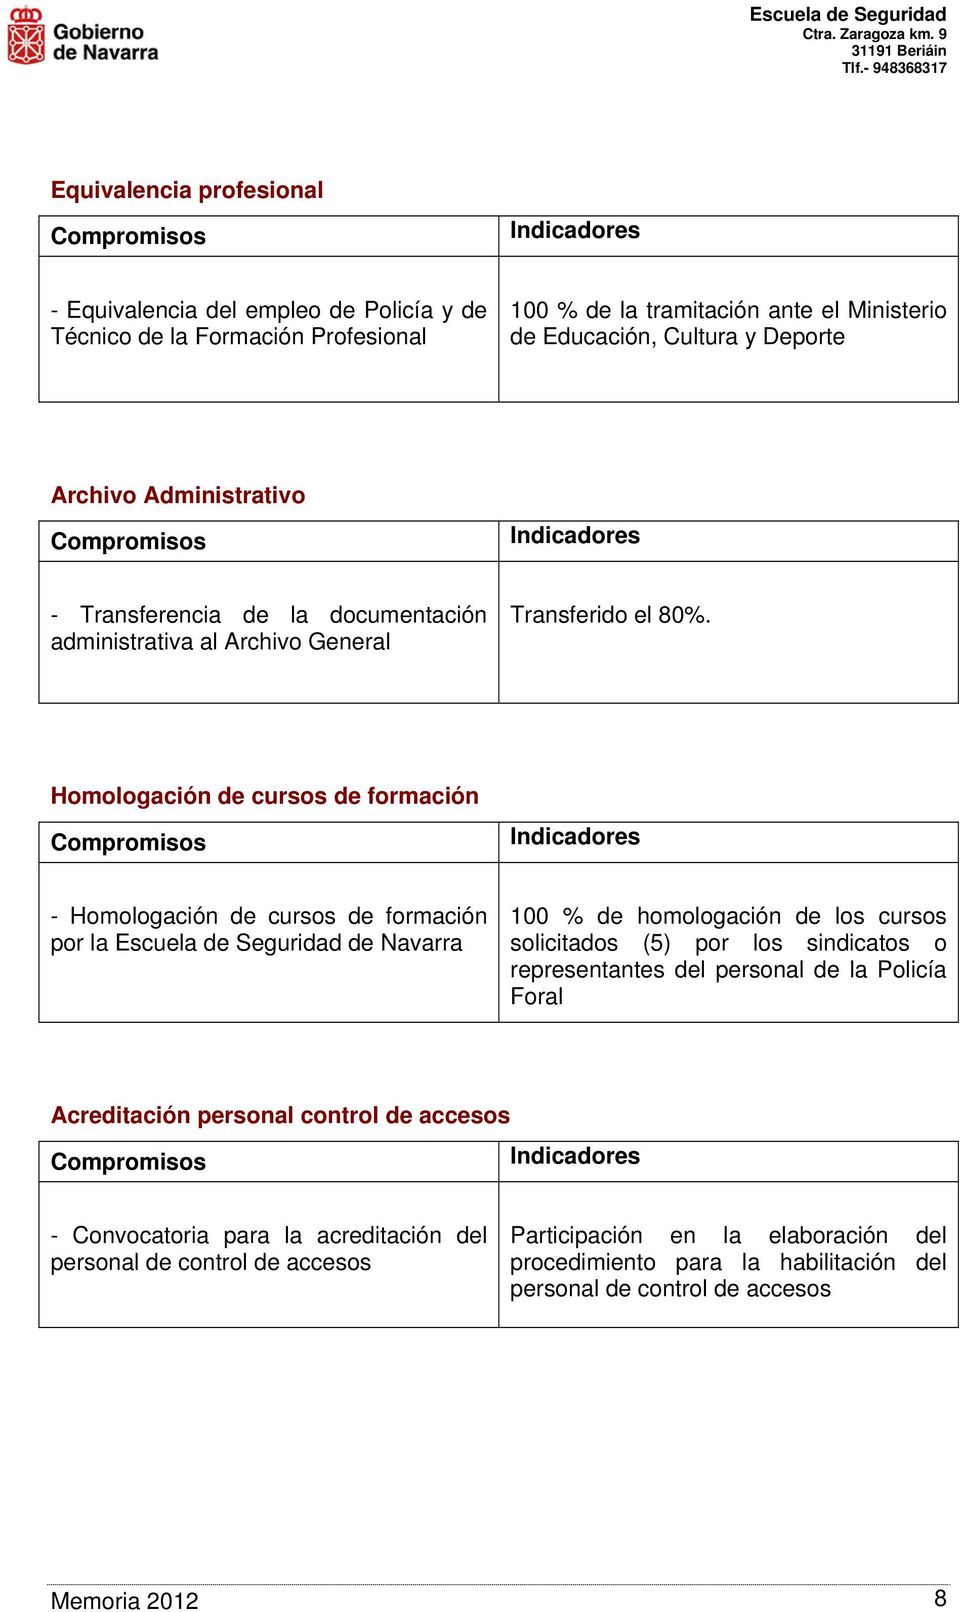 Homologación de cursos de formación - Homologación de cursos de formación por la Escuela de Seguridad de Navarra 1 % de homologación de los cursos solicitados (5) por los sindicatos o